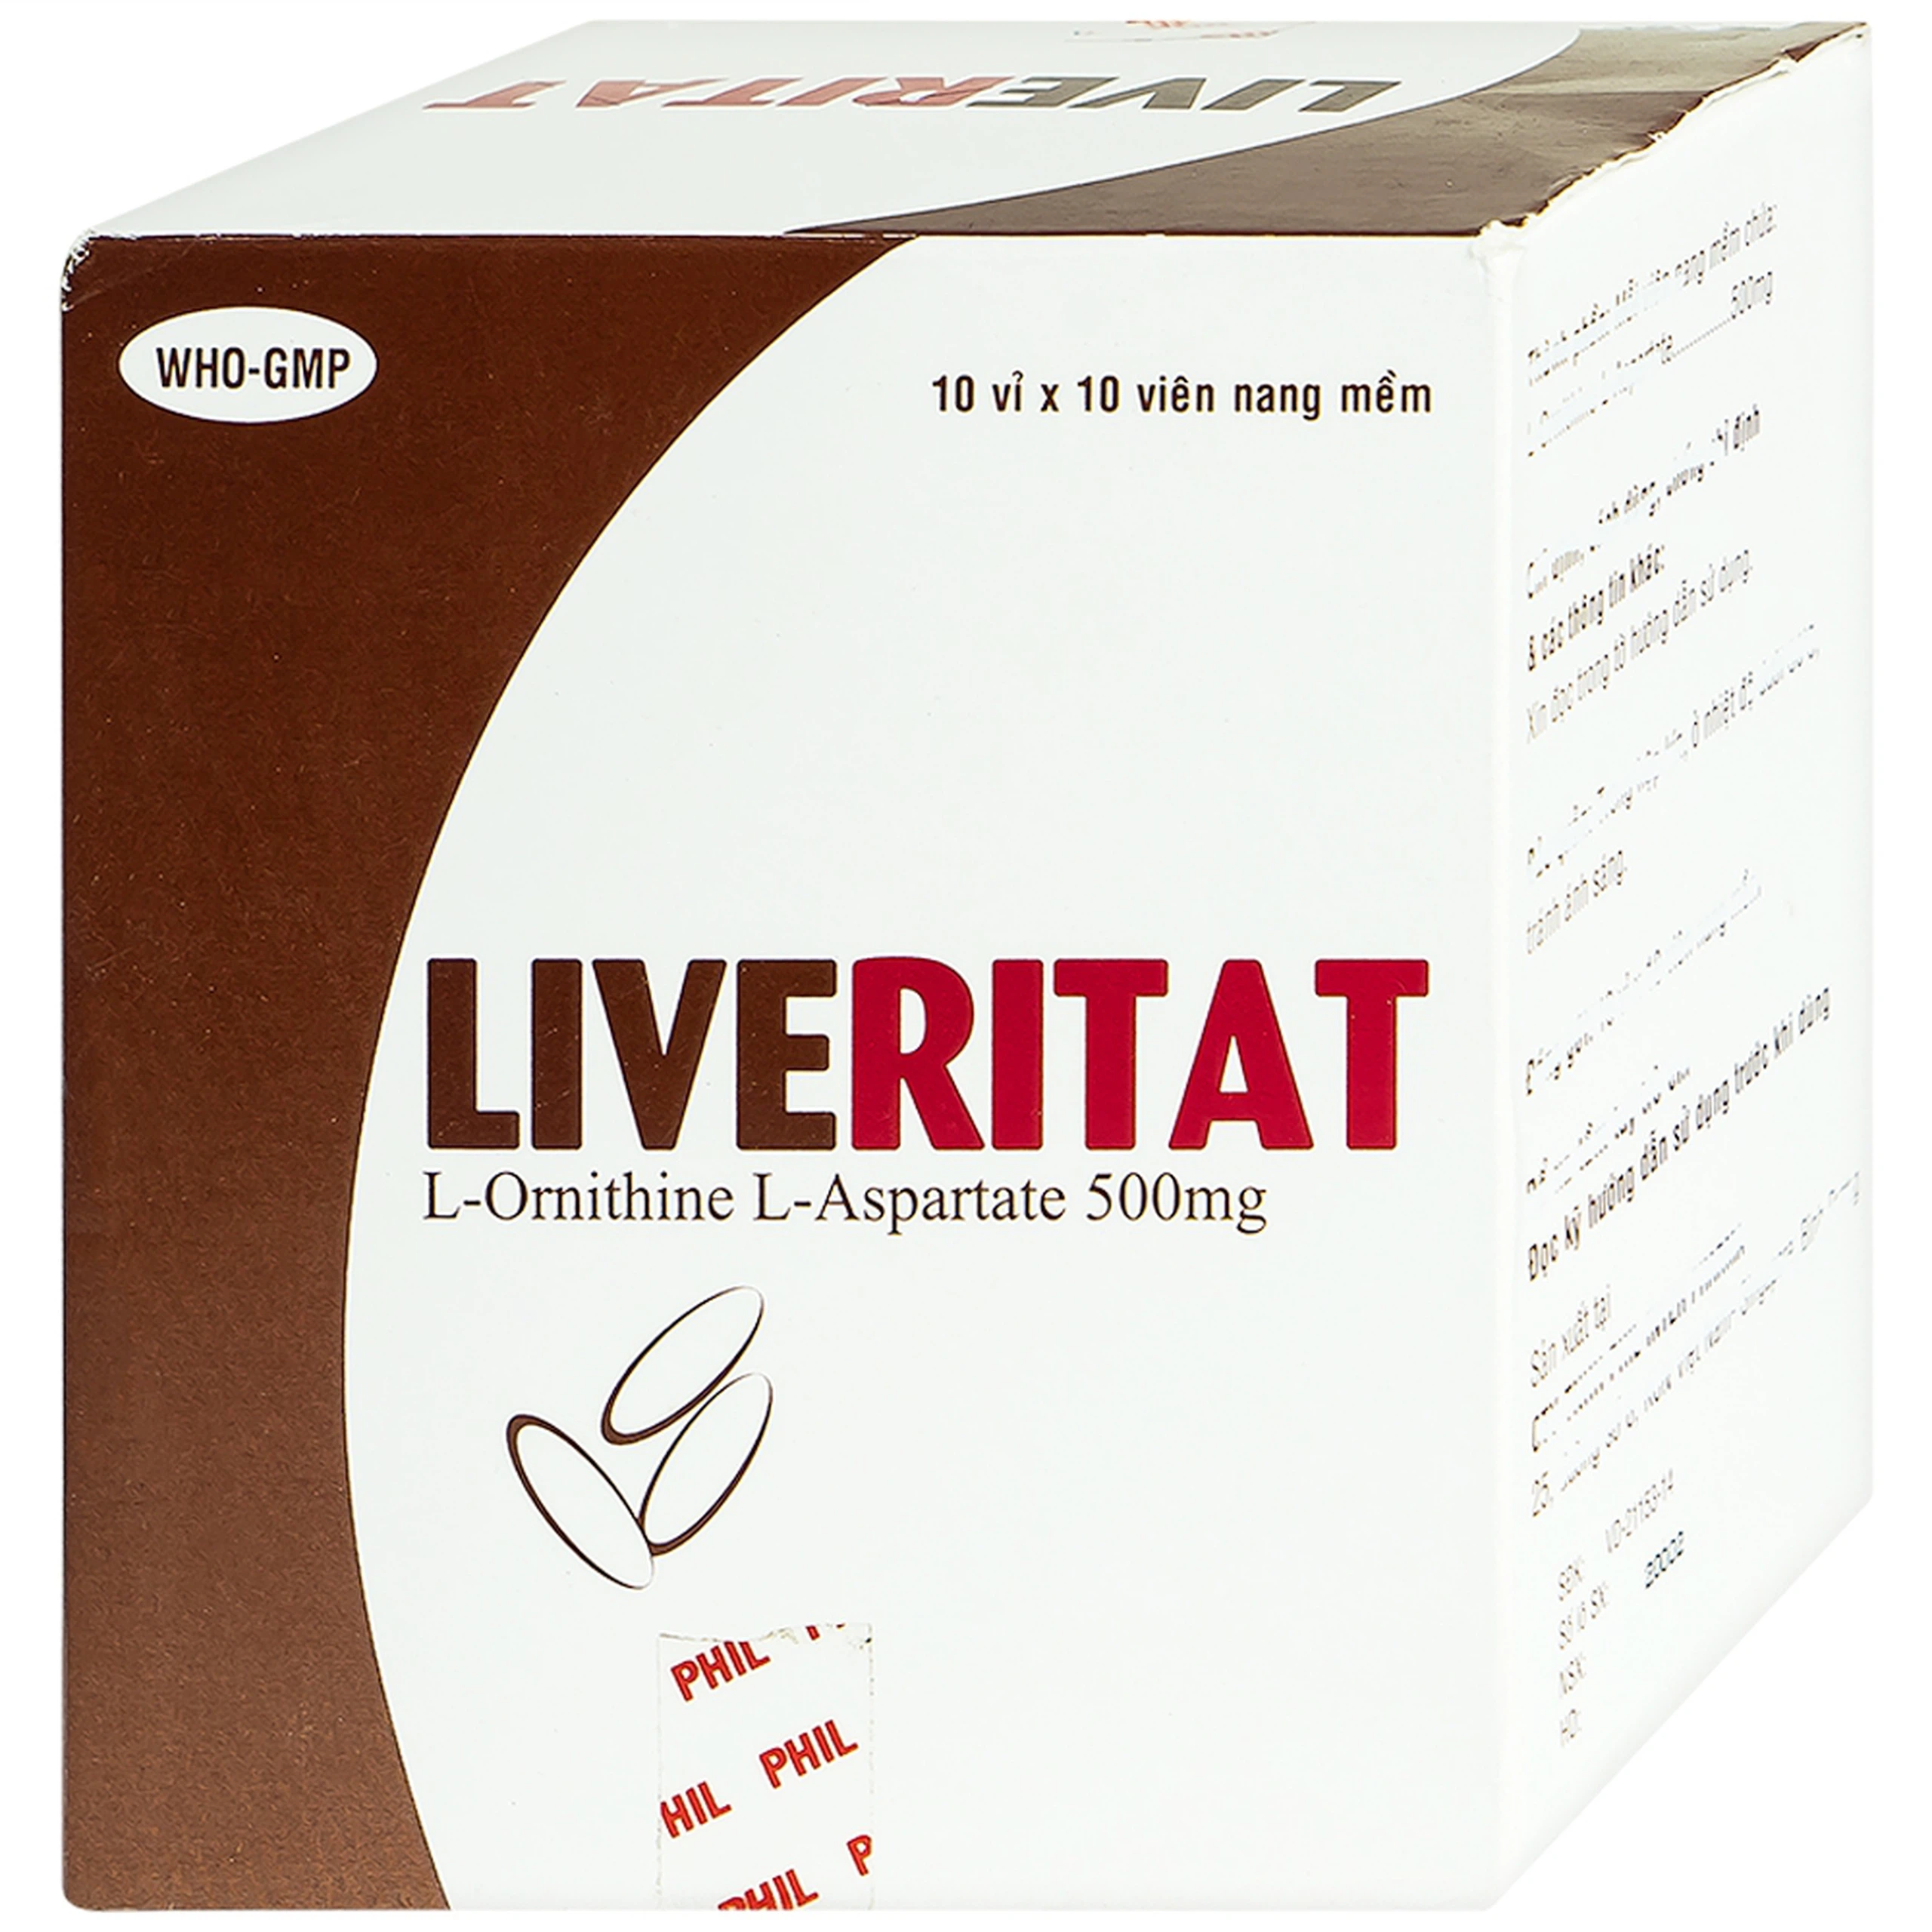 Viên nang mềm Leveritat 500mg Phil Inter Pharma điều trị viêm gan, gan nhiễm mỡ (10 vỉ x 10 viên)